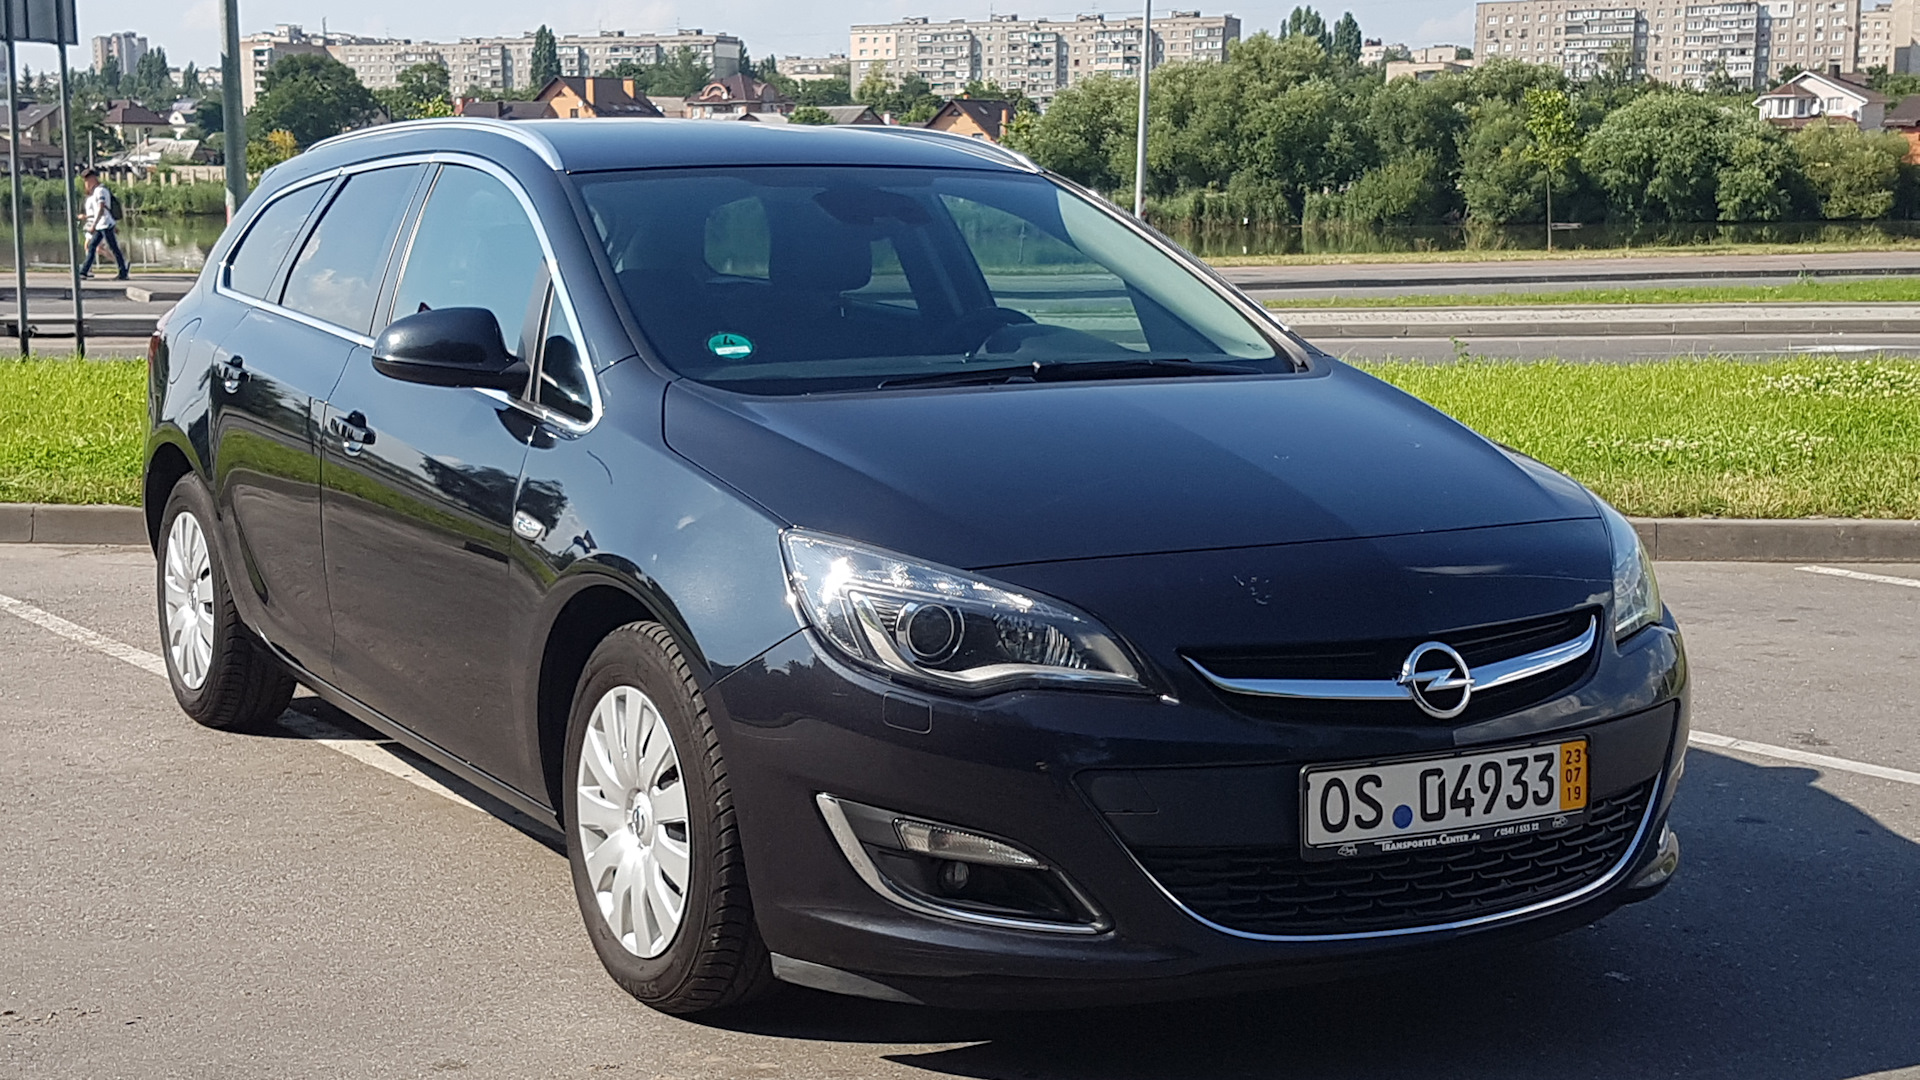 Opel Astra j 2.0 CDTI. Opel Astra j 1.3 CDTI Sport Tourer. Opel Astra j Sports Tourer r17. Opel 2014 Astra отзывы. 2.0 cdti opel